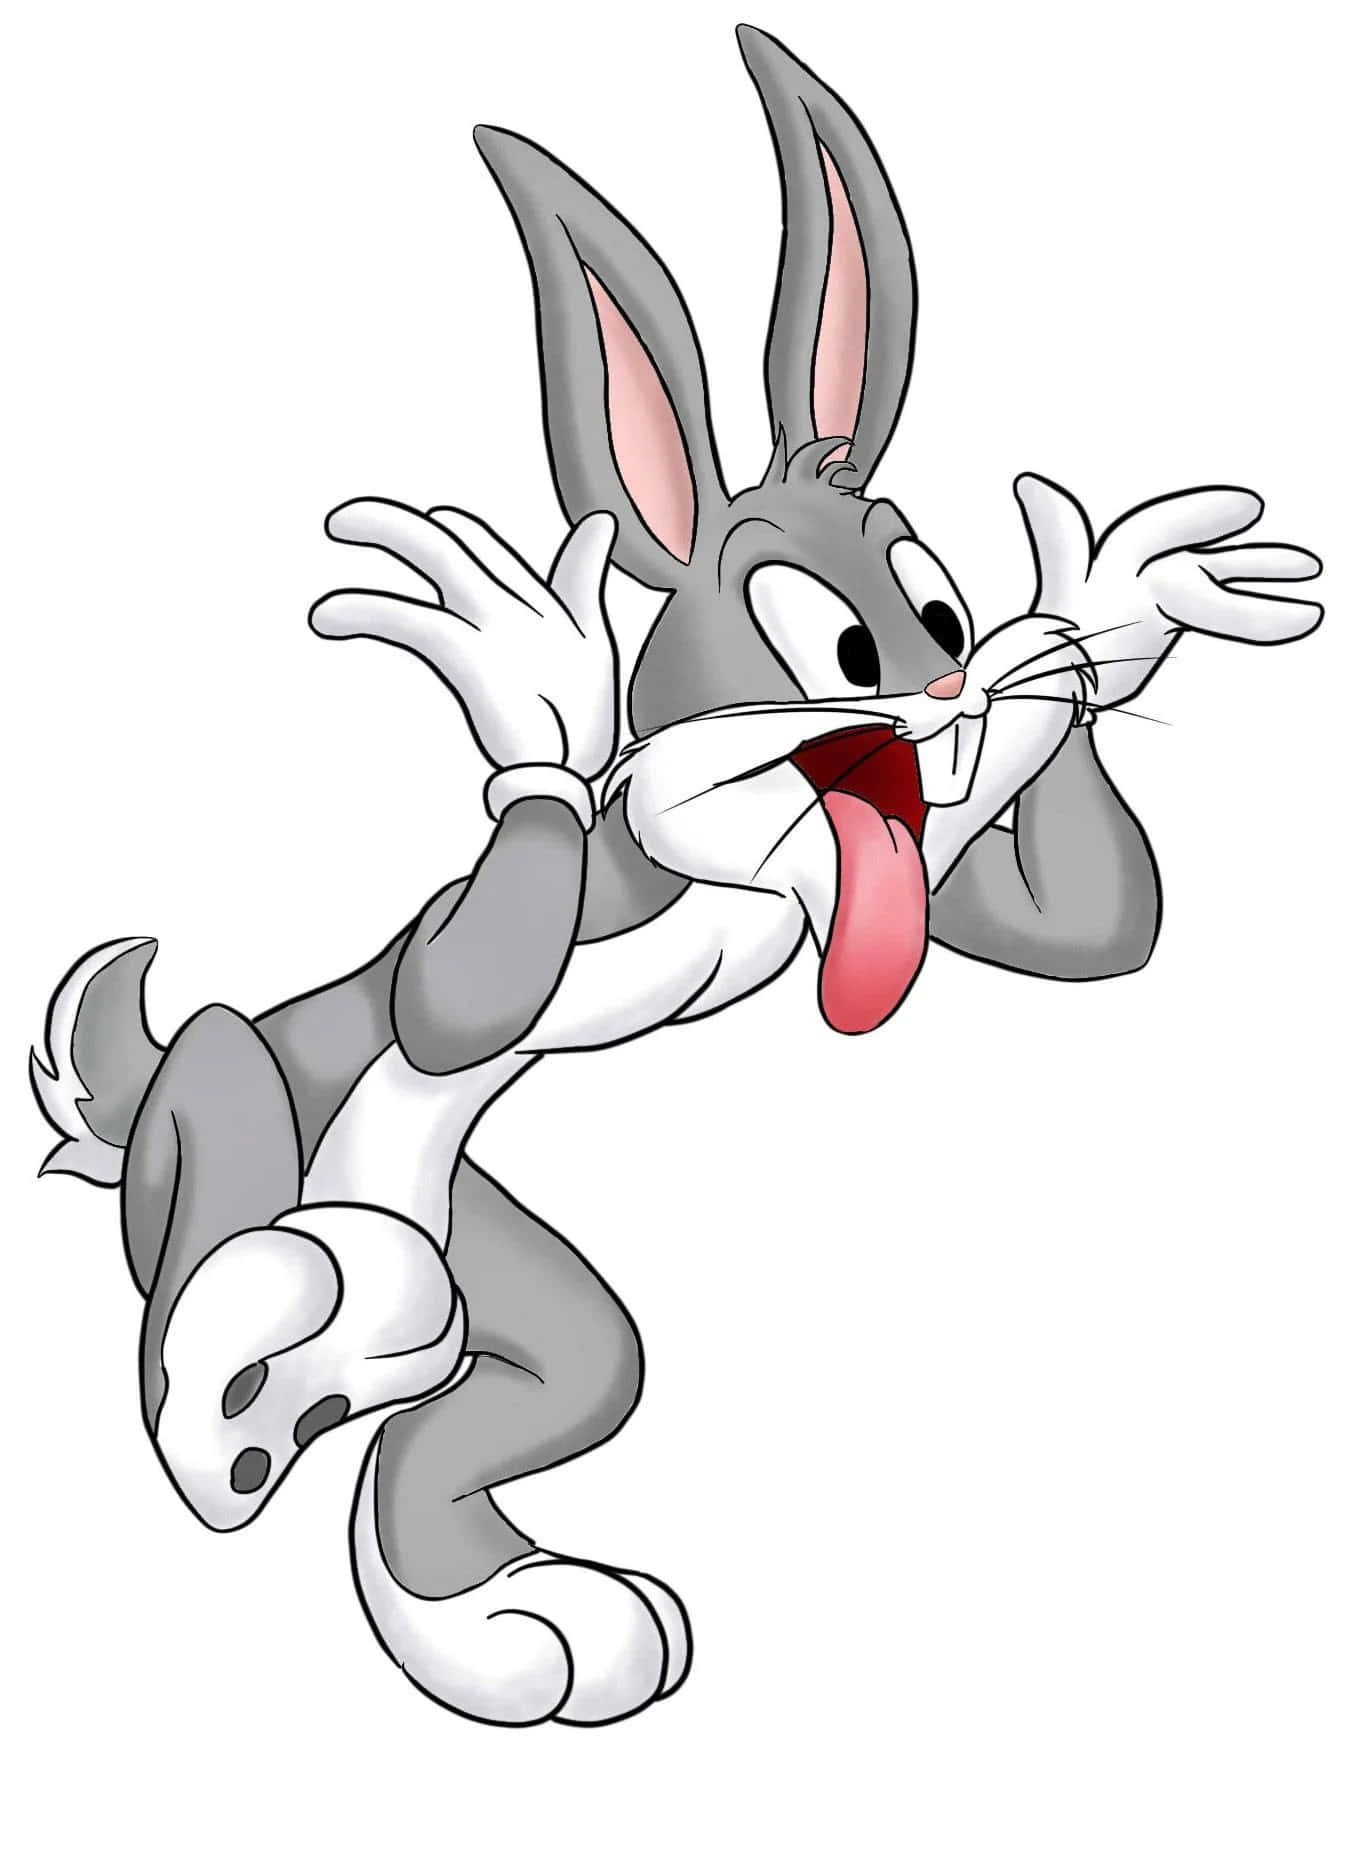 Gørdig Klar Til De Vilde Eventyr Med Bugs Bunny!